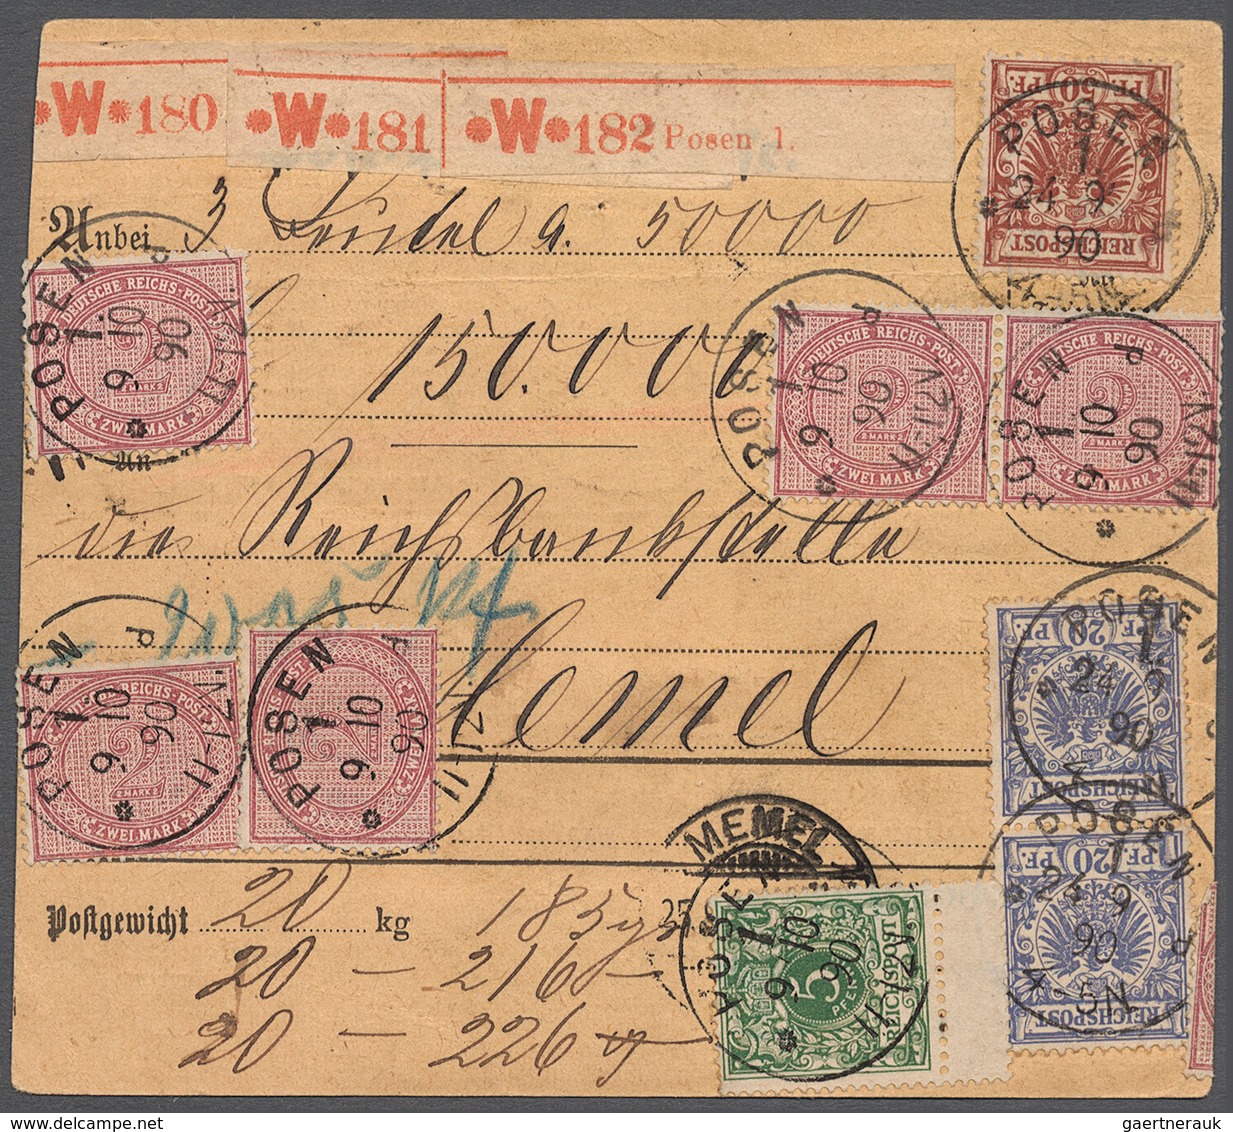 Deutsches Reich - Pfennige: 1890, Stammteil Einer Paketkarte Für Drei Pakete Mit Wertangabe 150.0000 - Covers & Documents